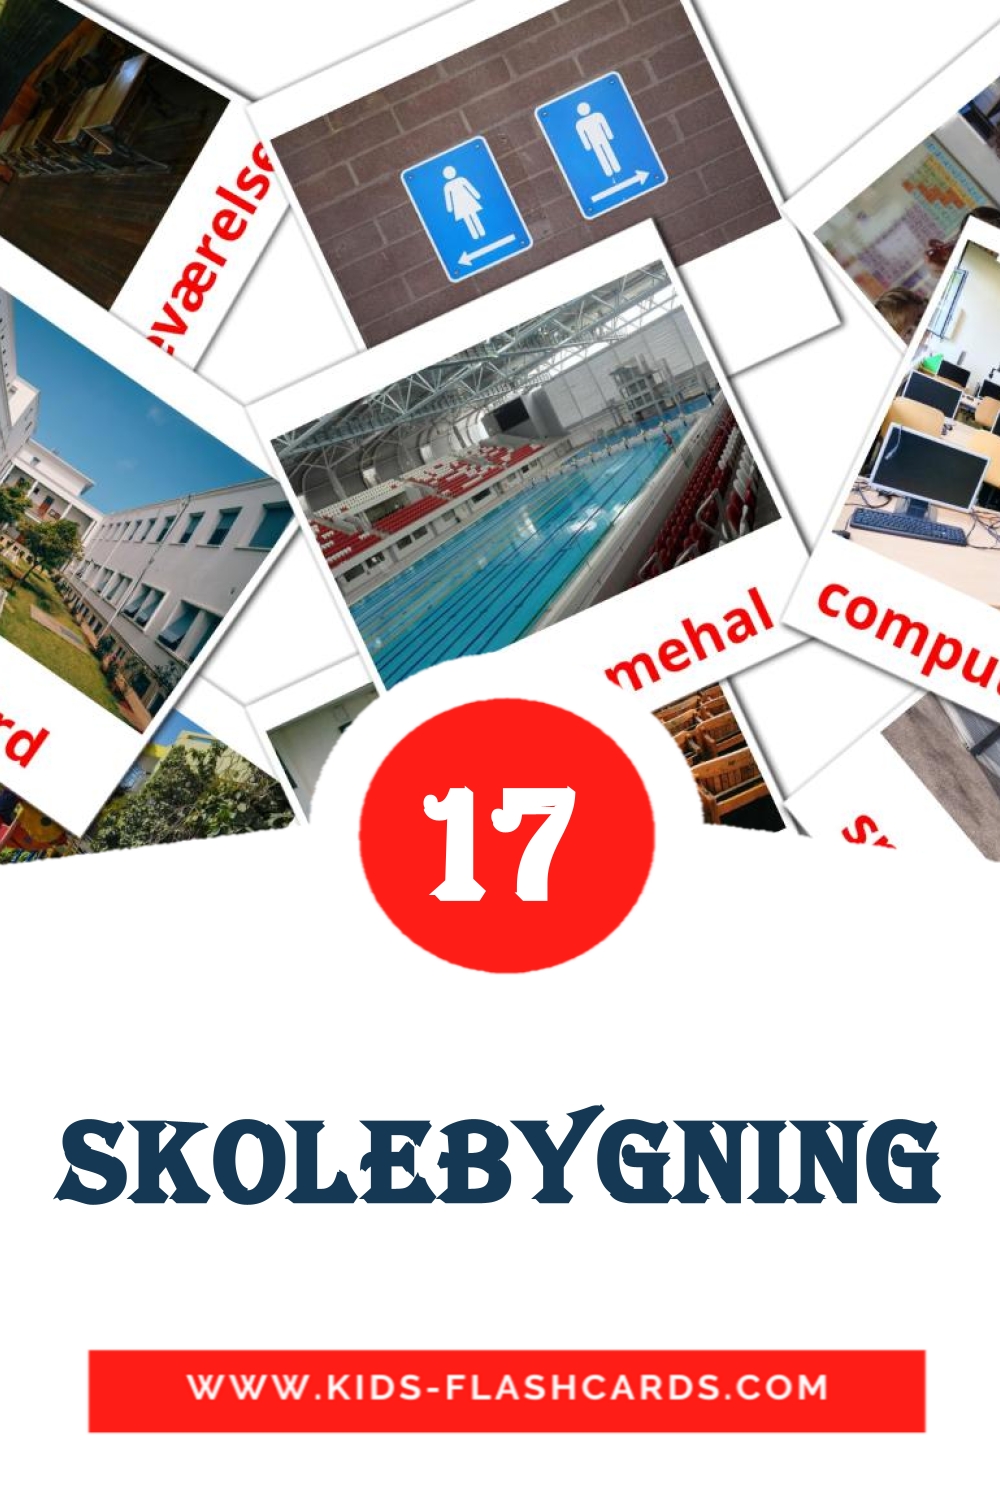 17 Skolebygning Bildkarten für den Kindergarten auf Dansk